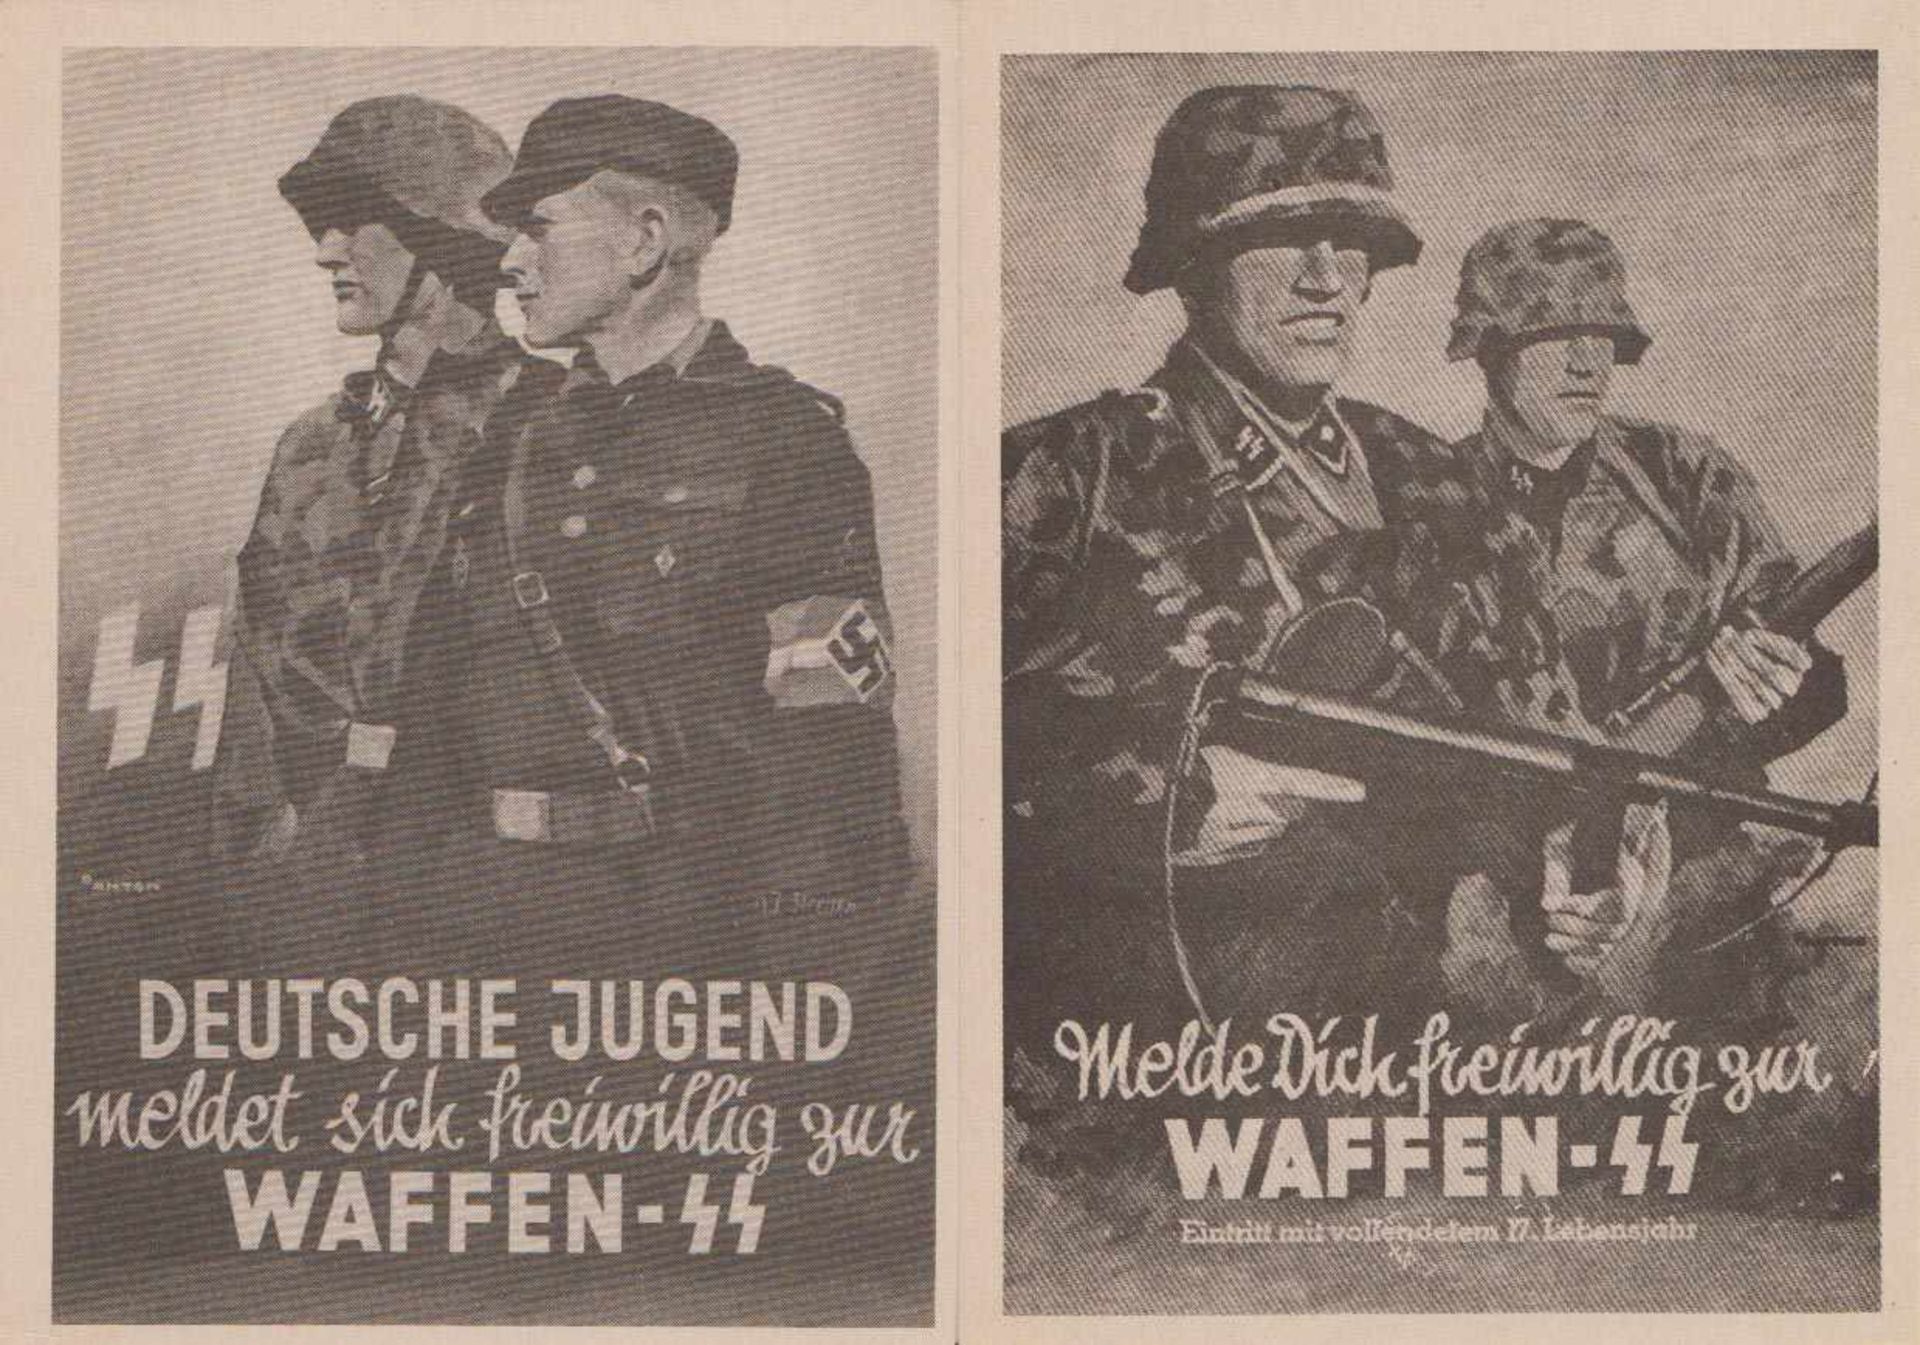 2 x AK Waffen-SS Feldpost Repro Melde Dich freiwillig zur Waffen-SS und "Deutsche Jugend meldet sich